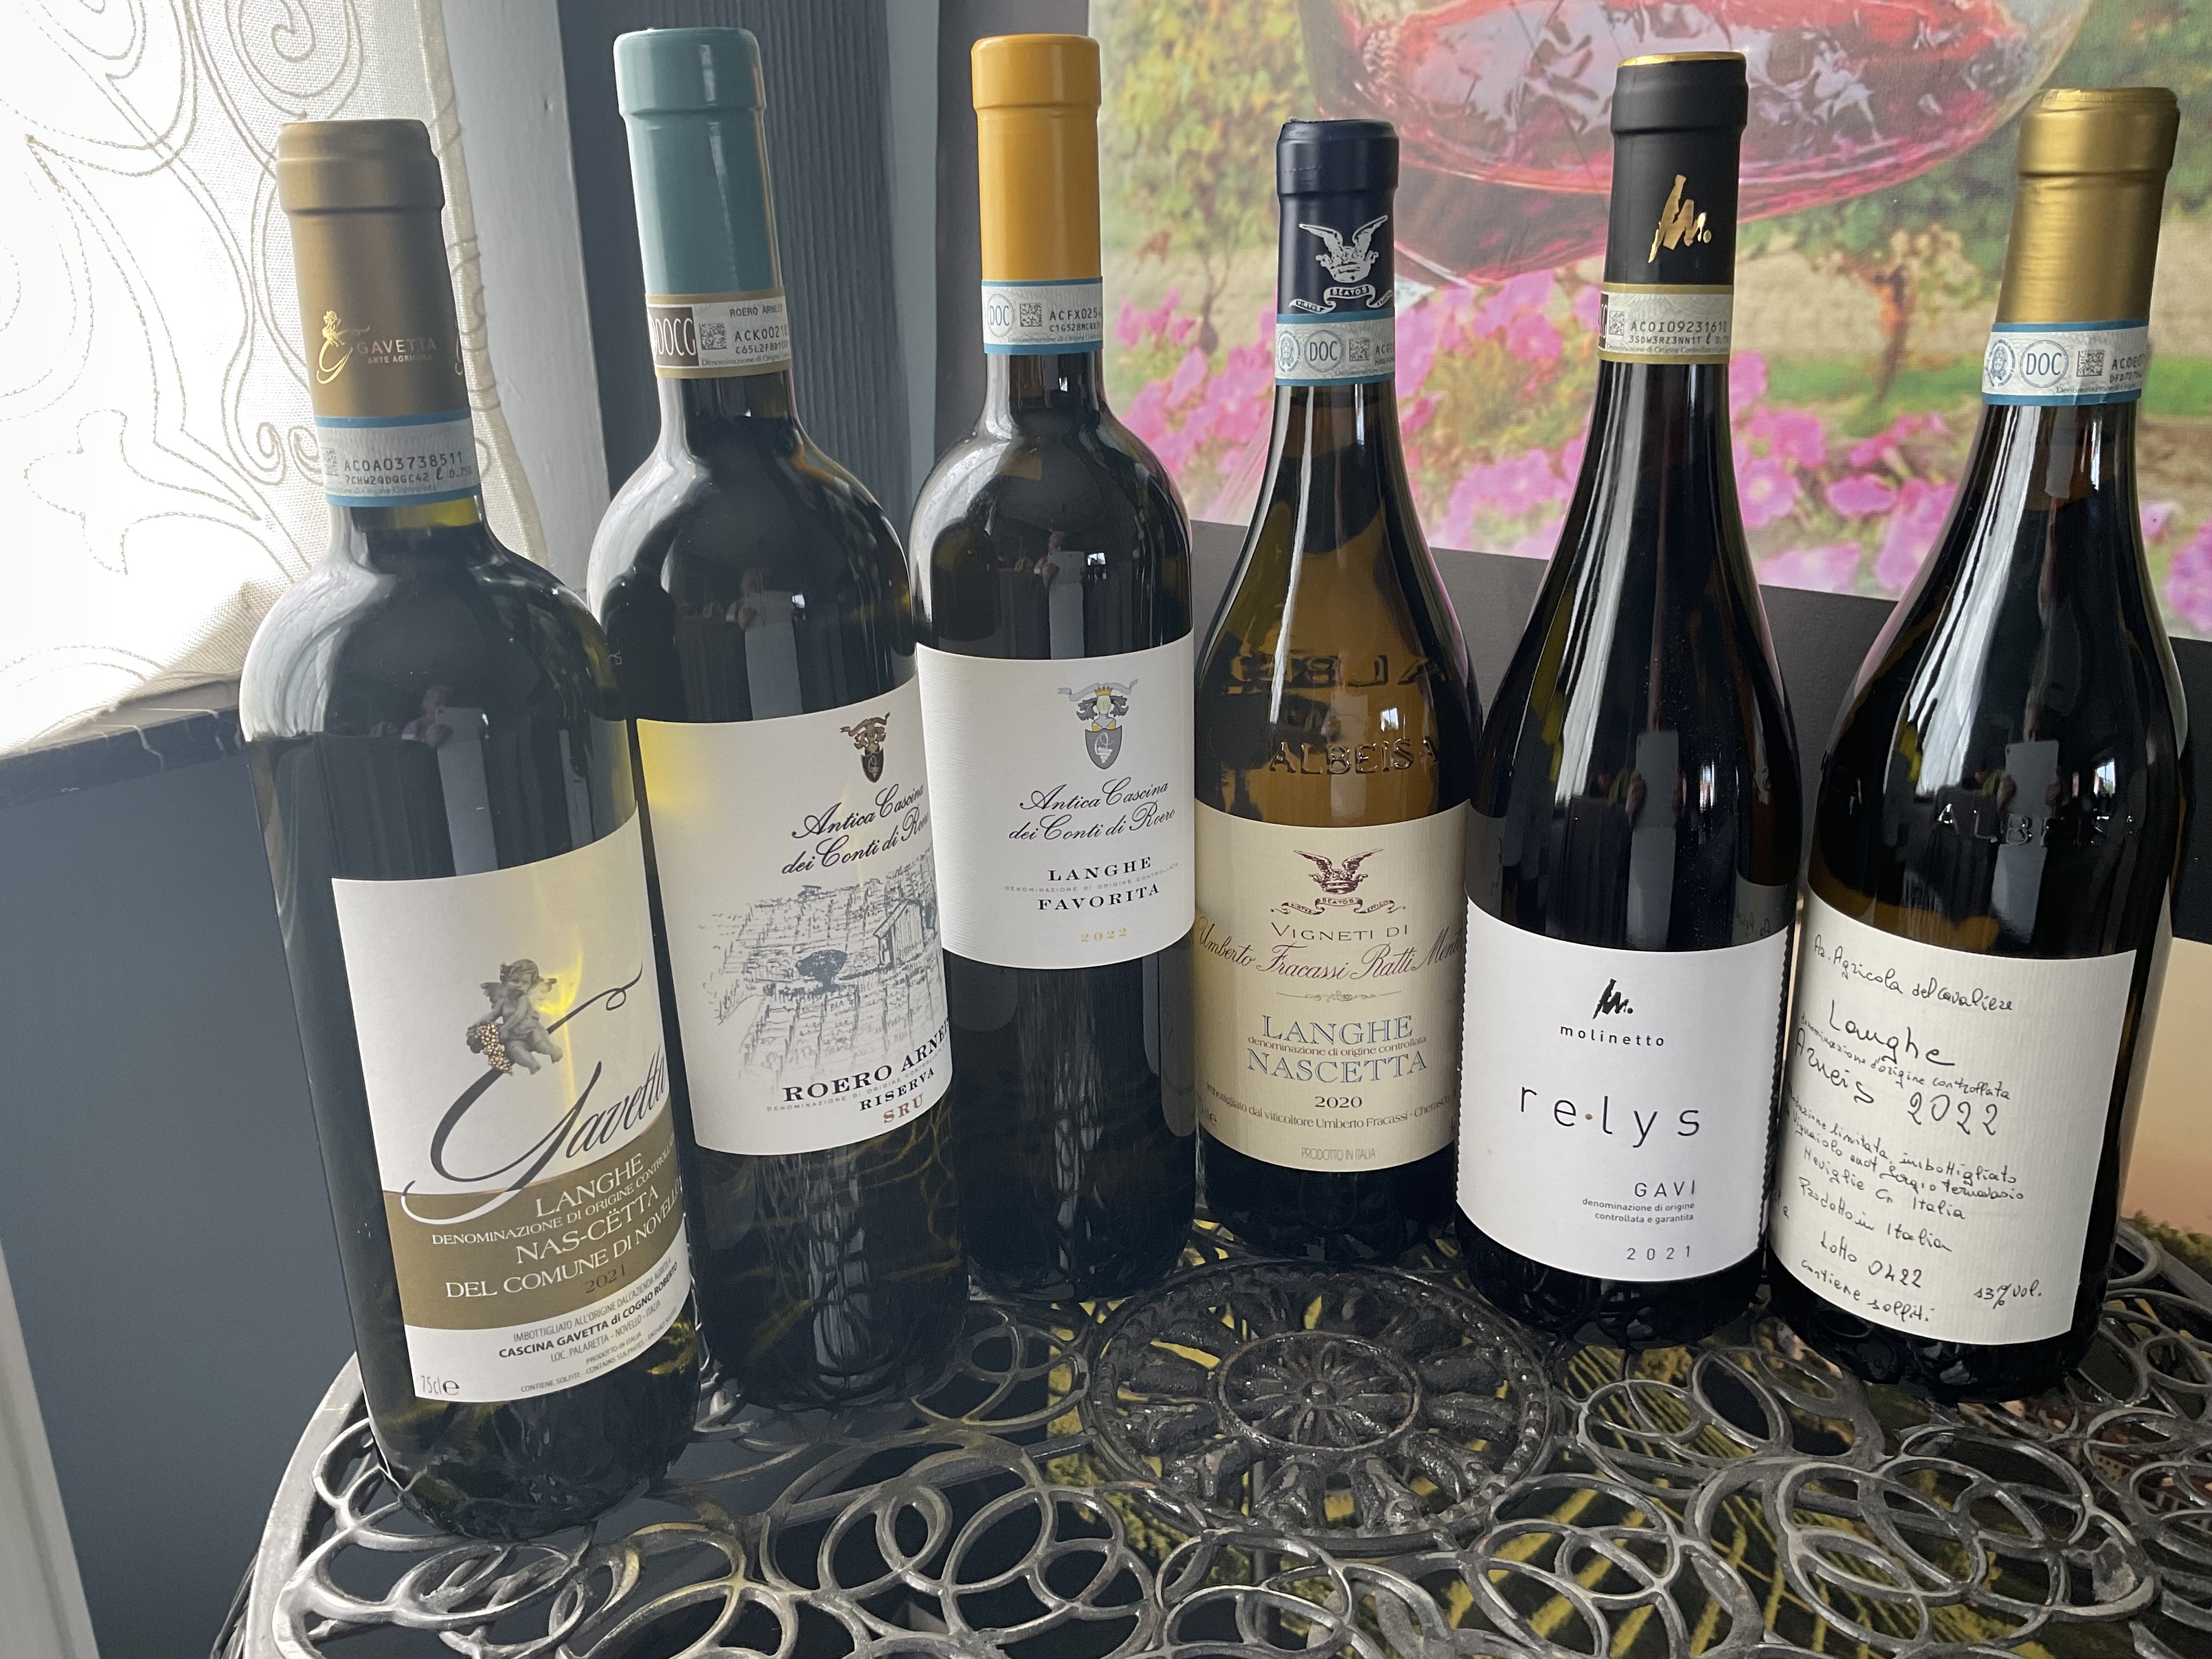 Proefpakket - Witte wijnen uit Piemonte